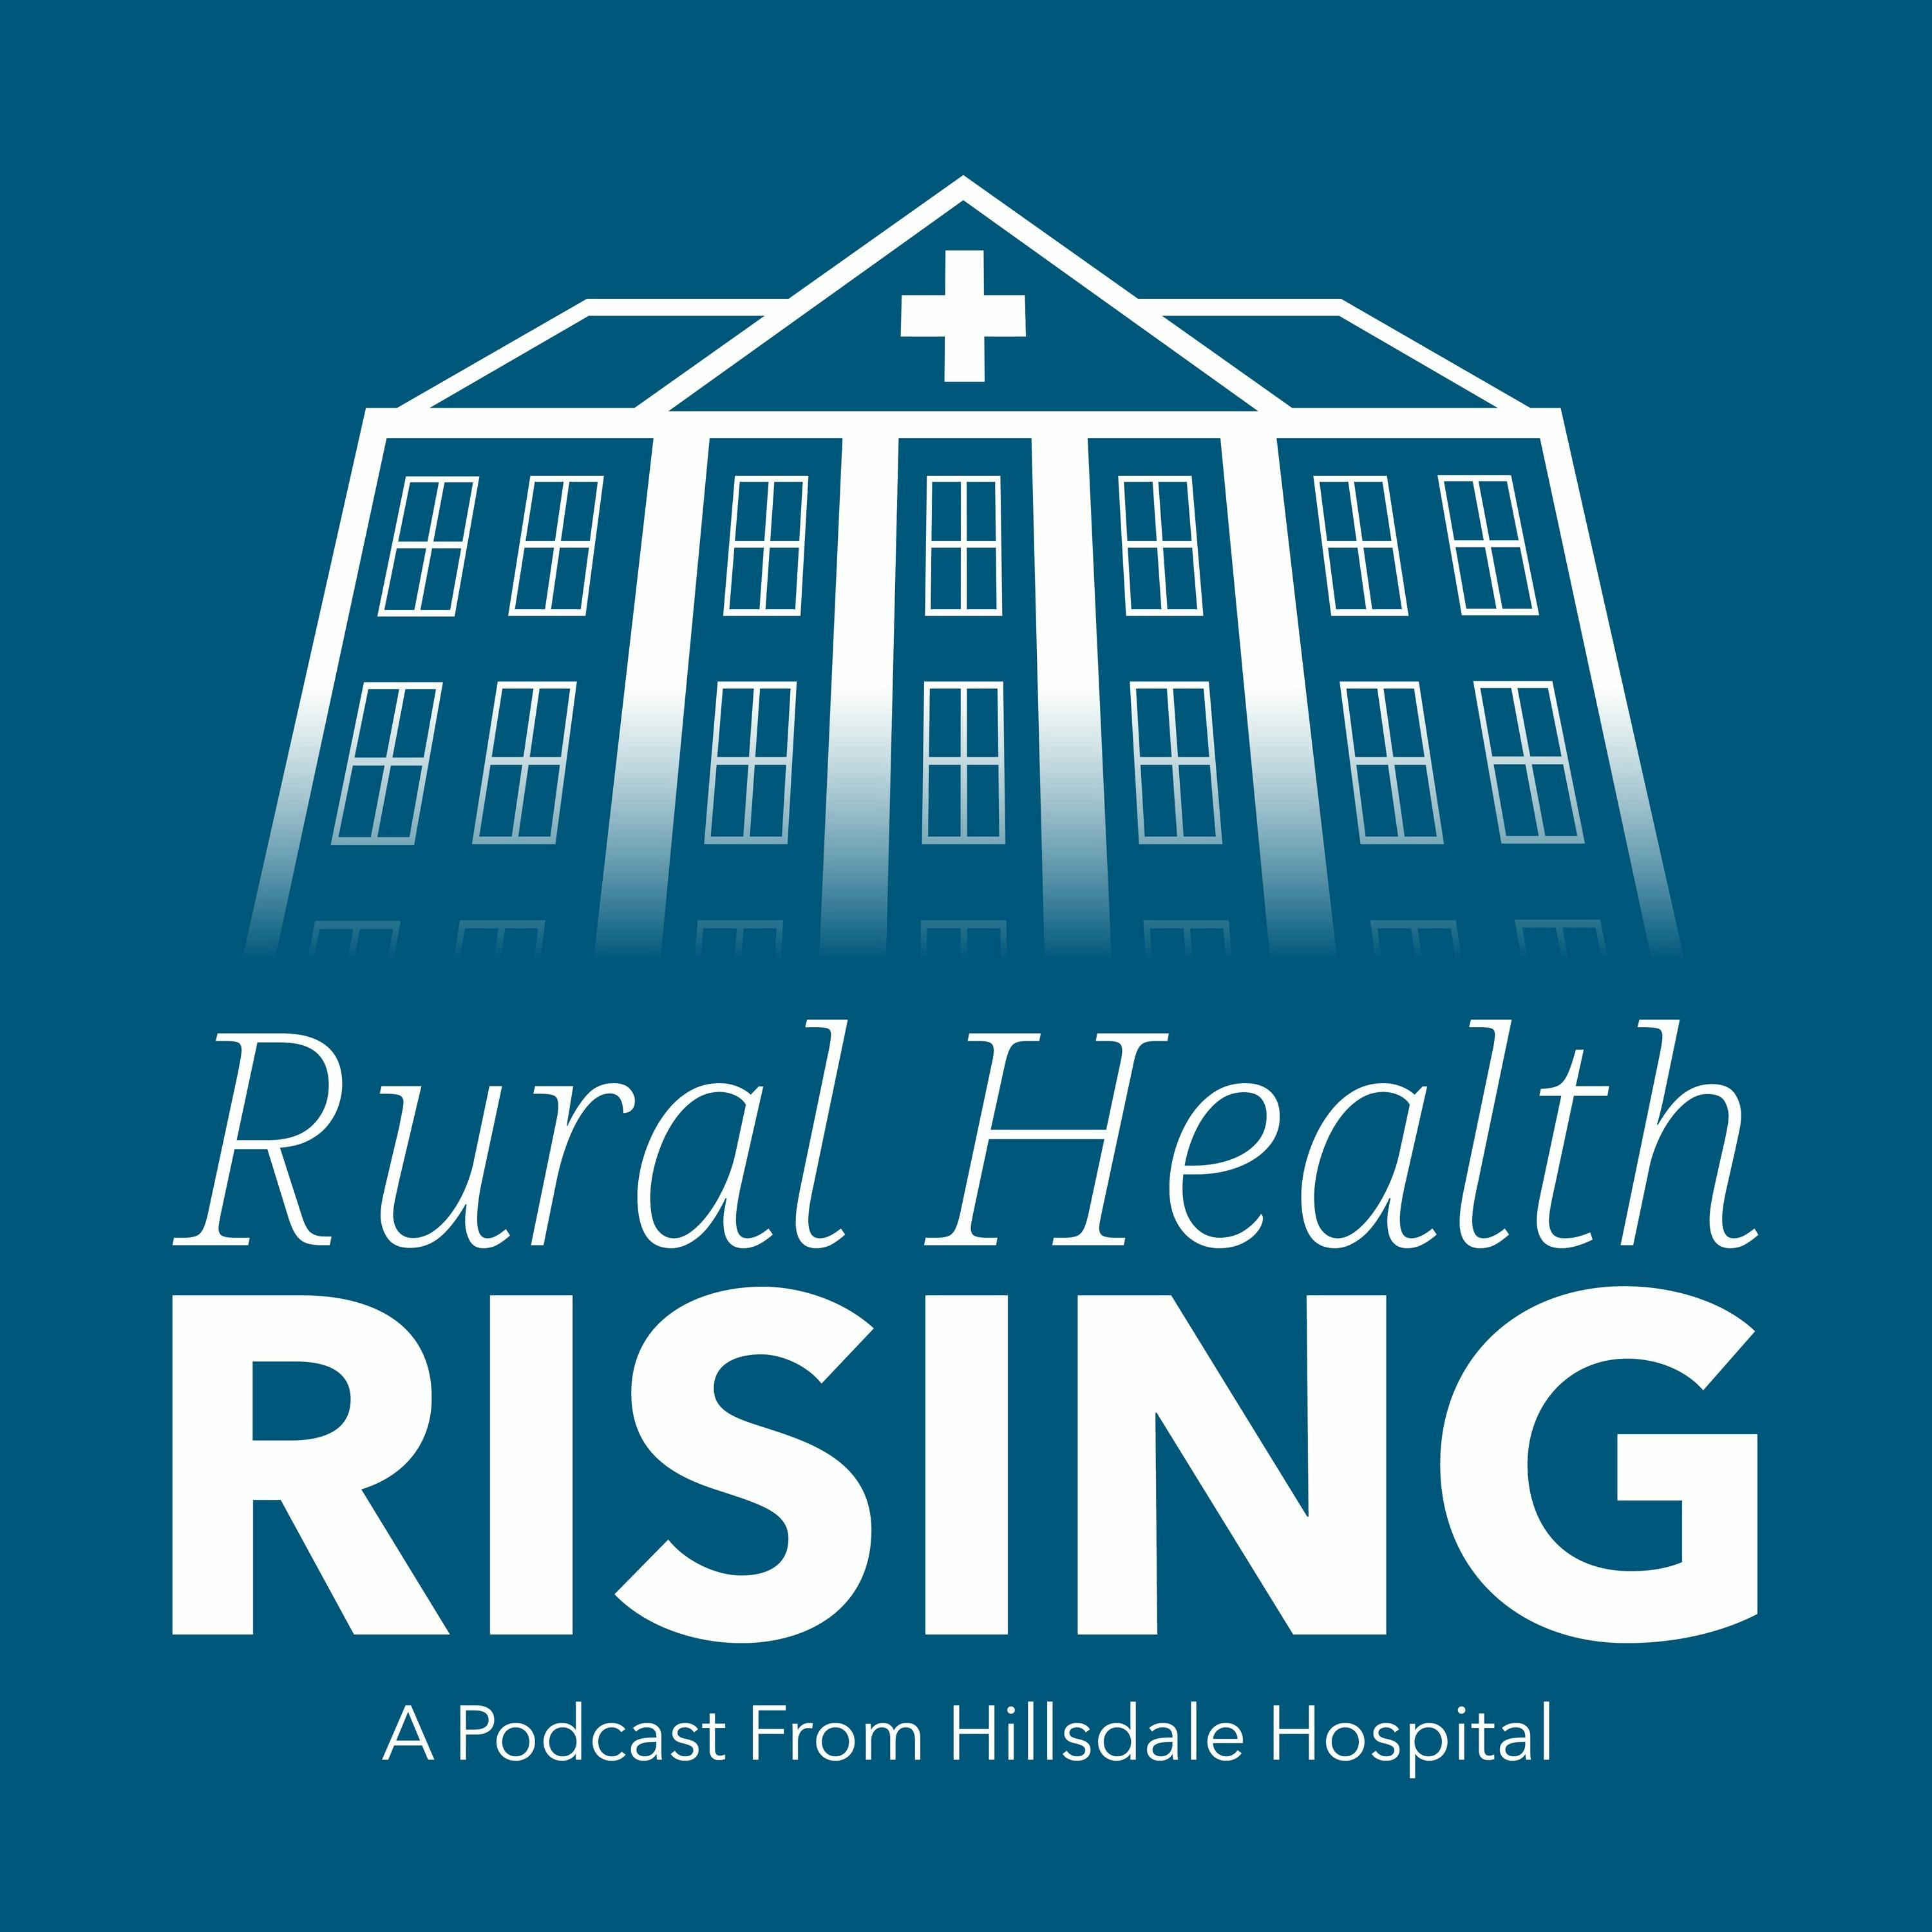 Episode 9: Rural Health Finance